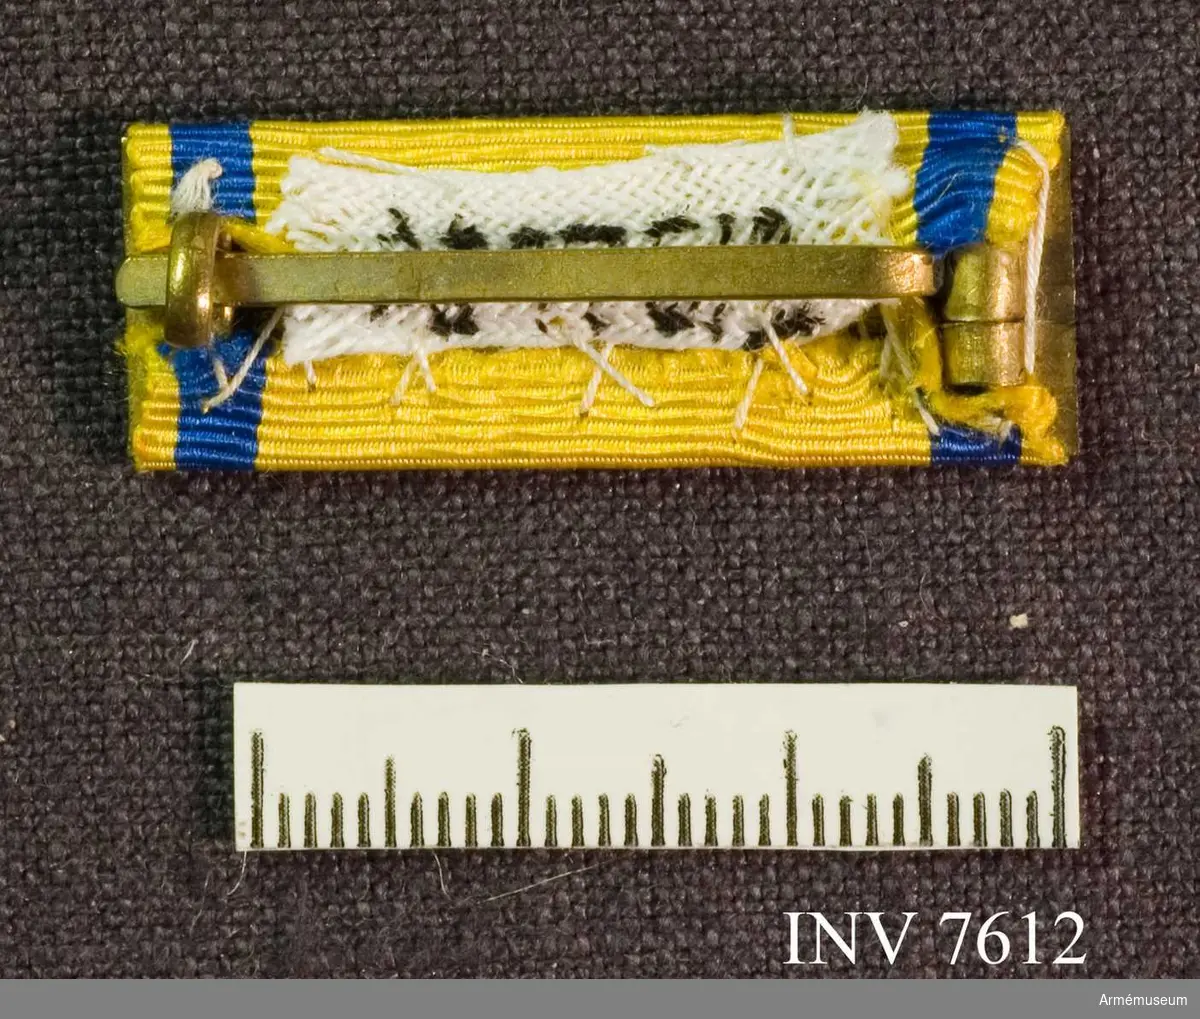 Metallspänne överklätt med samma band vad gäller färg och bredd som svärdstecknets band.

Förvaras tillsammans med AM 7611 i röd ask med gulddekor.